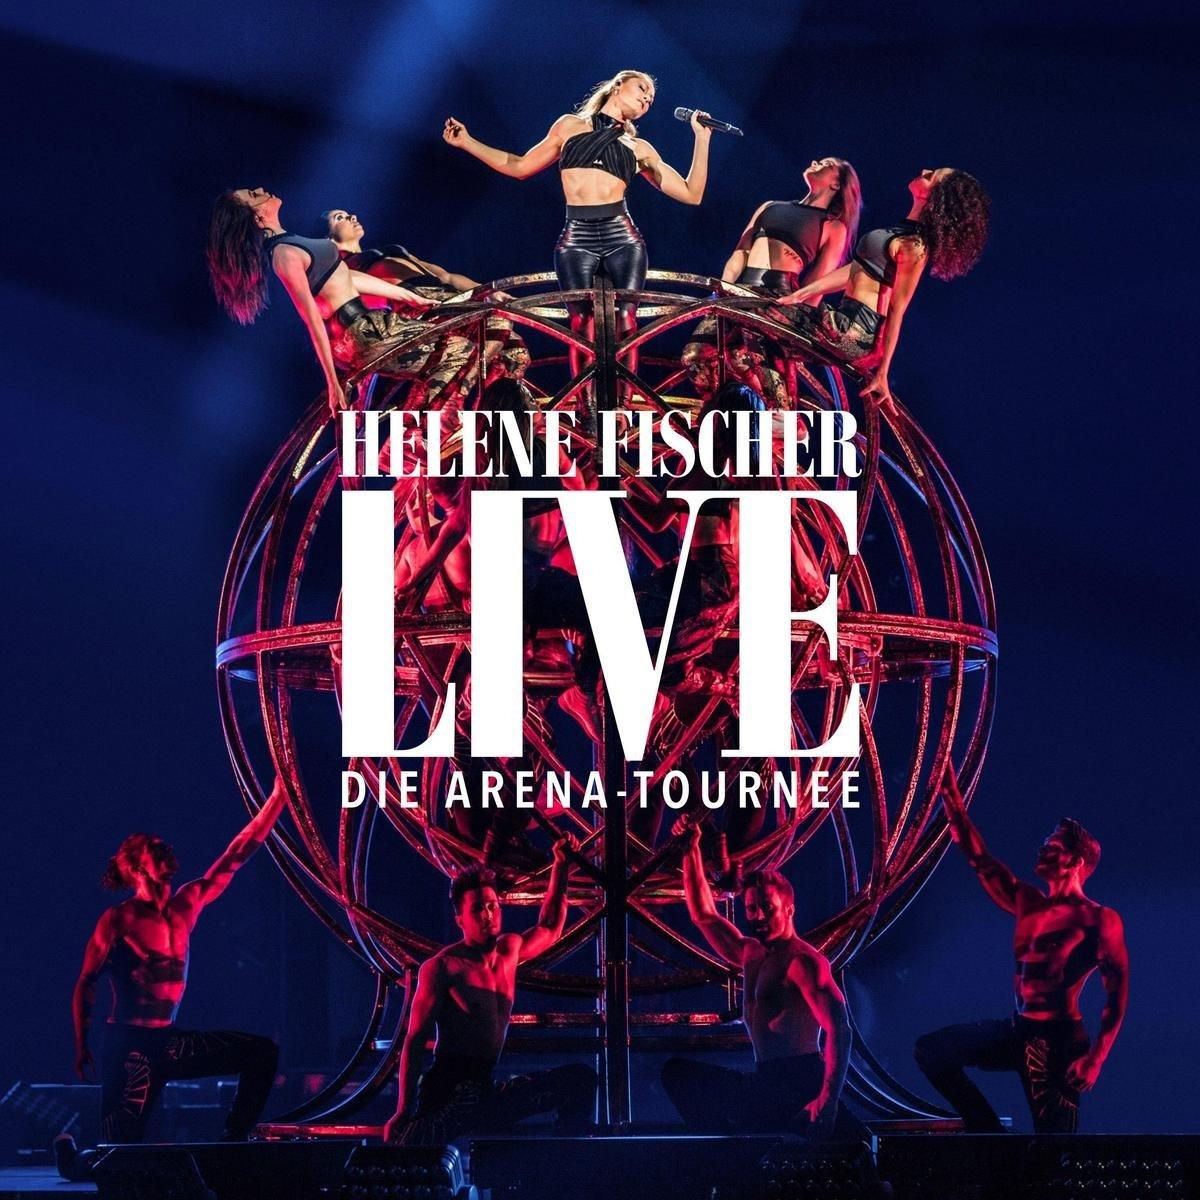 Helene Fischer - Helene Fischer Arena-Tournee Live (DVD) – Die 